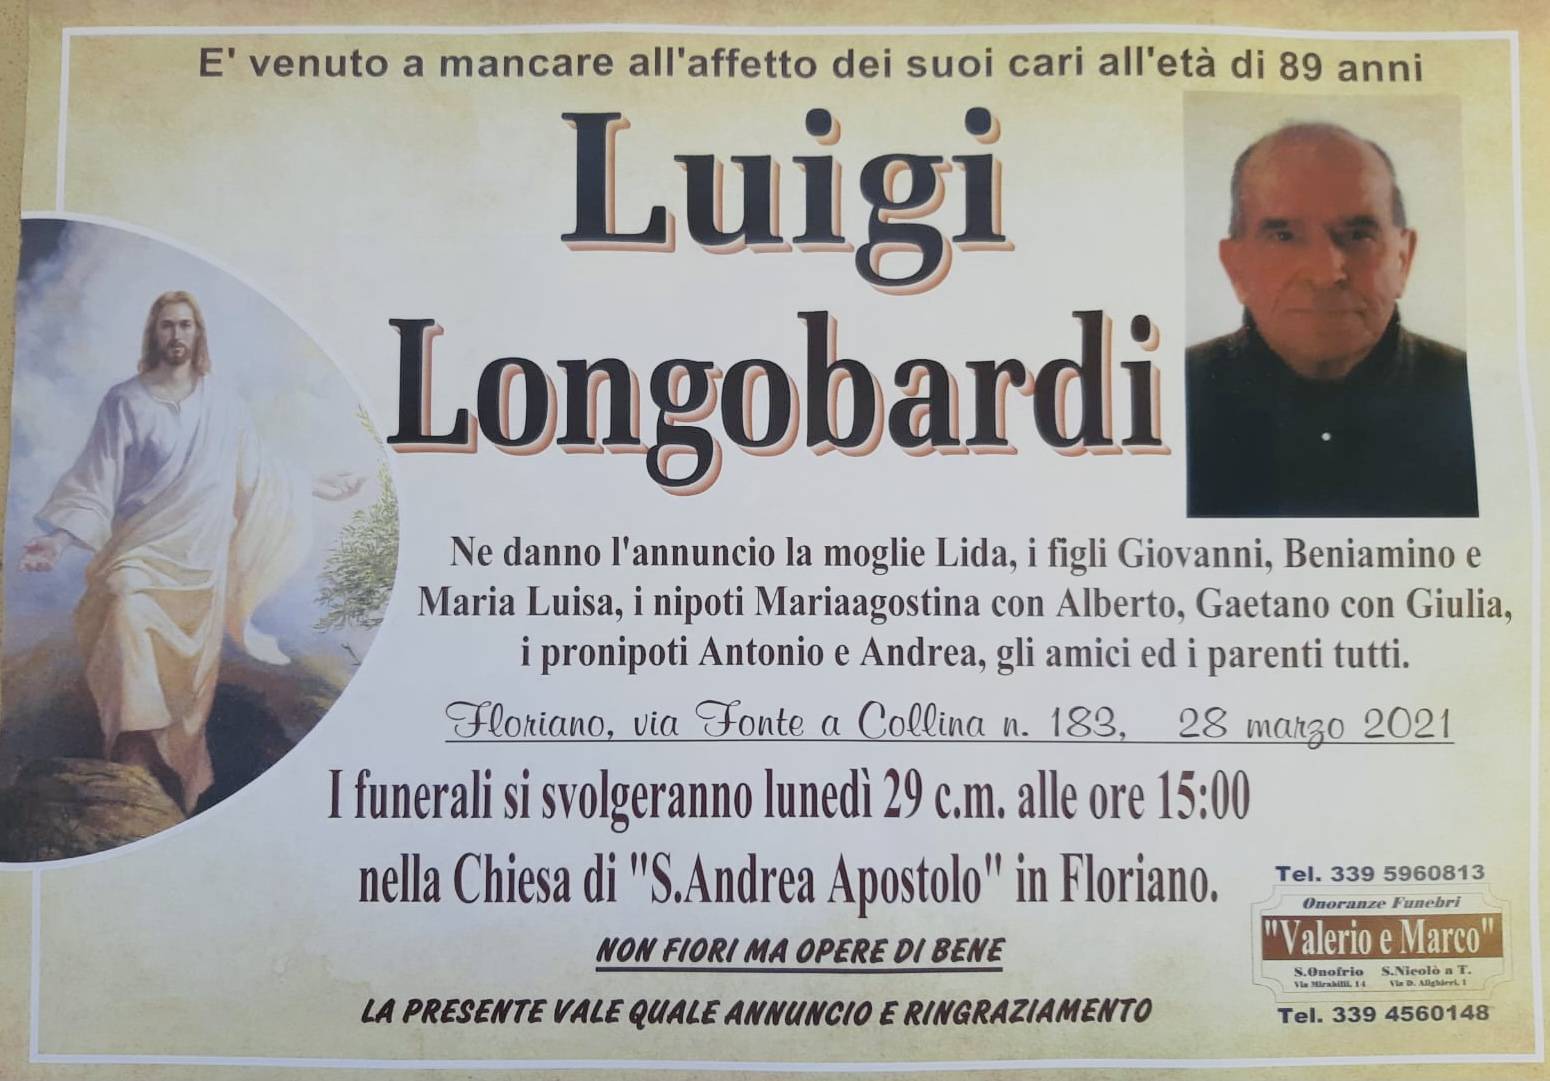 Luigi Longobardi